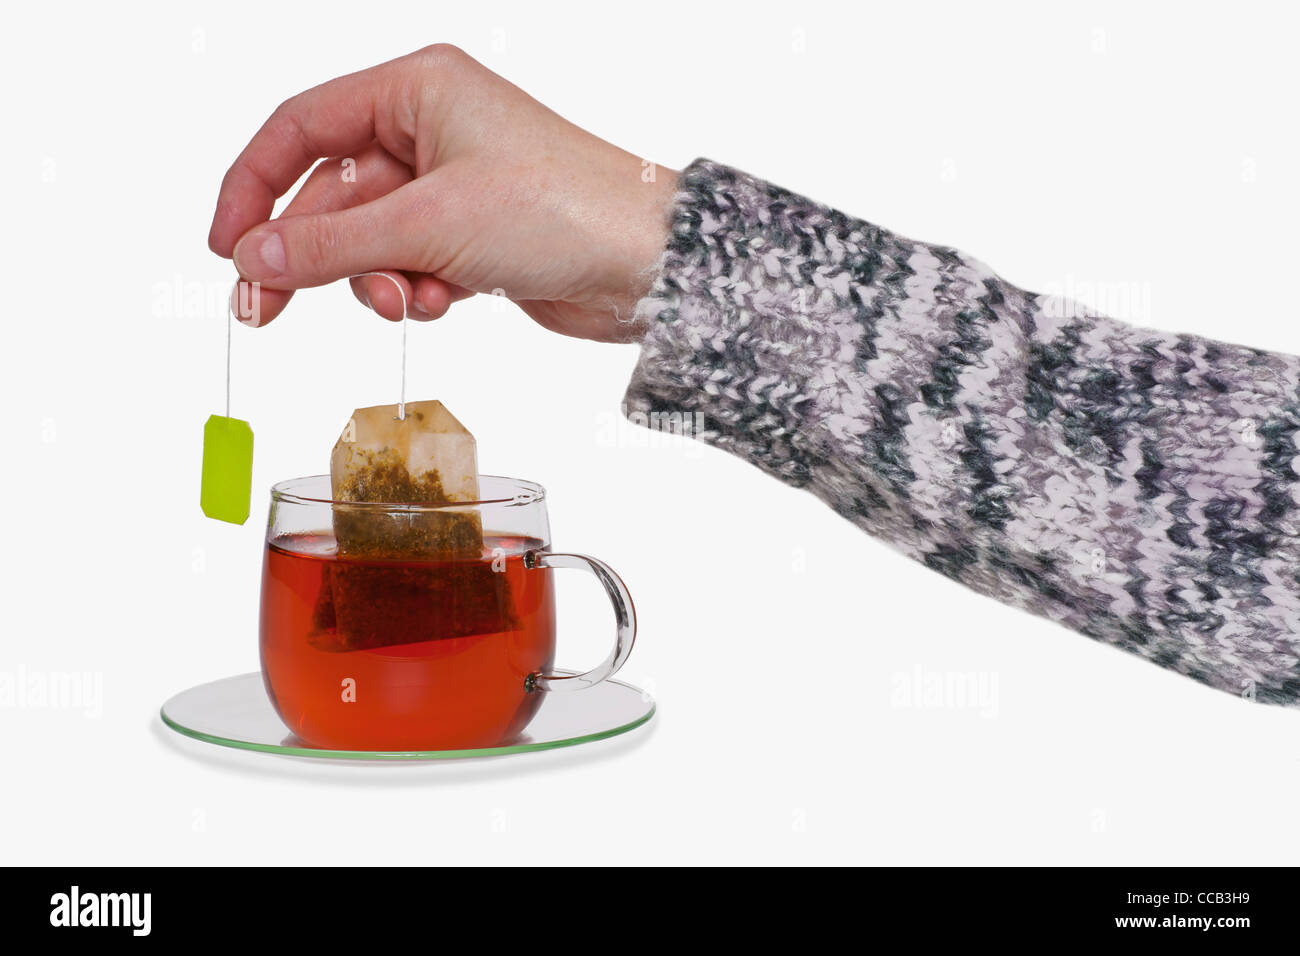 aus einer Tasse mit Tee wird der Teebeutel herausgezogen | the tea bag is pulled out of a cup with tea Stock Photo